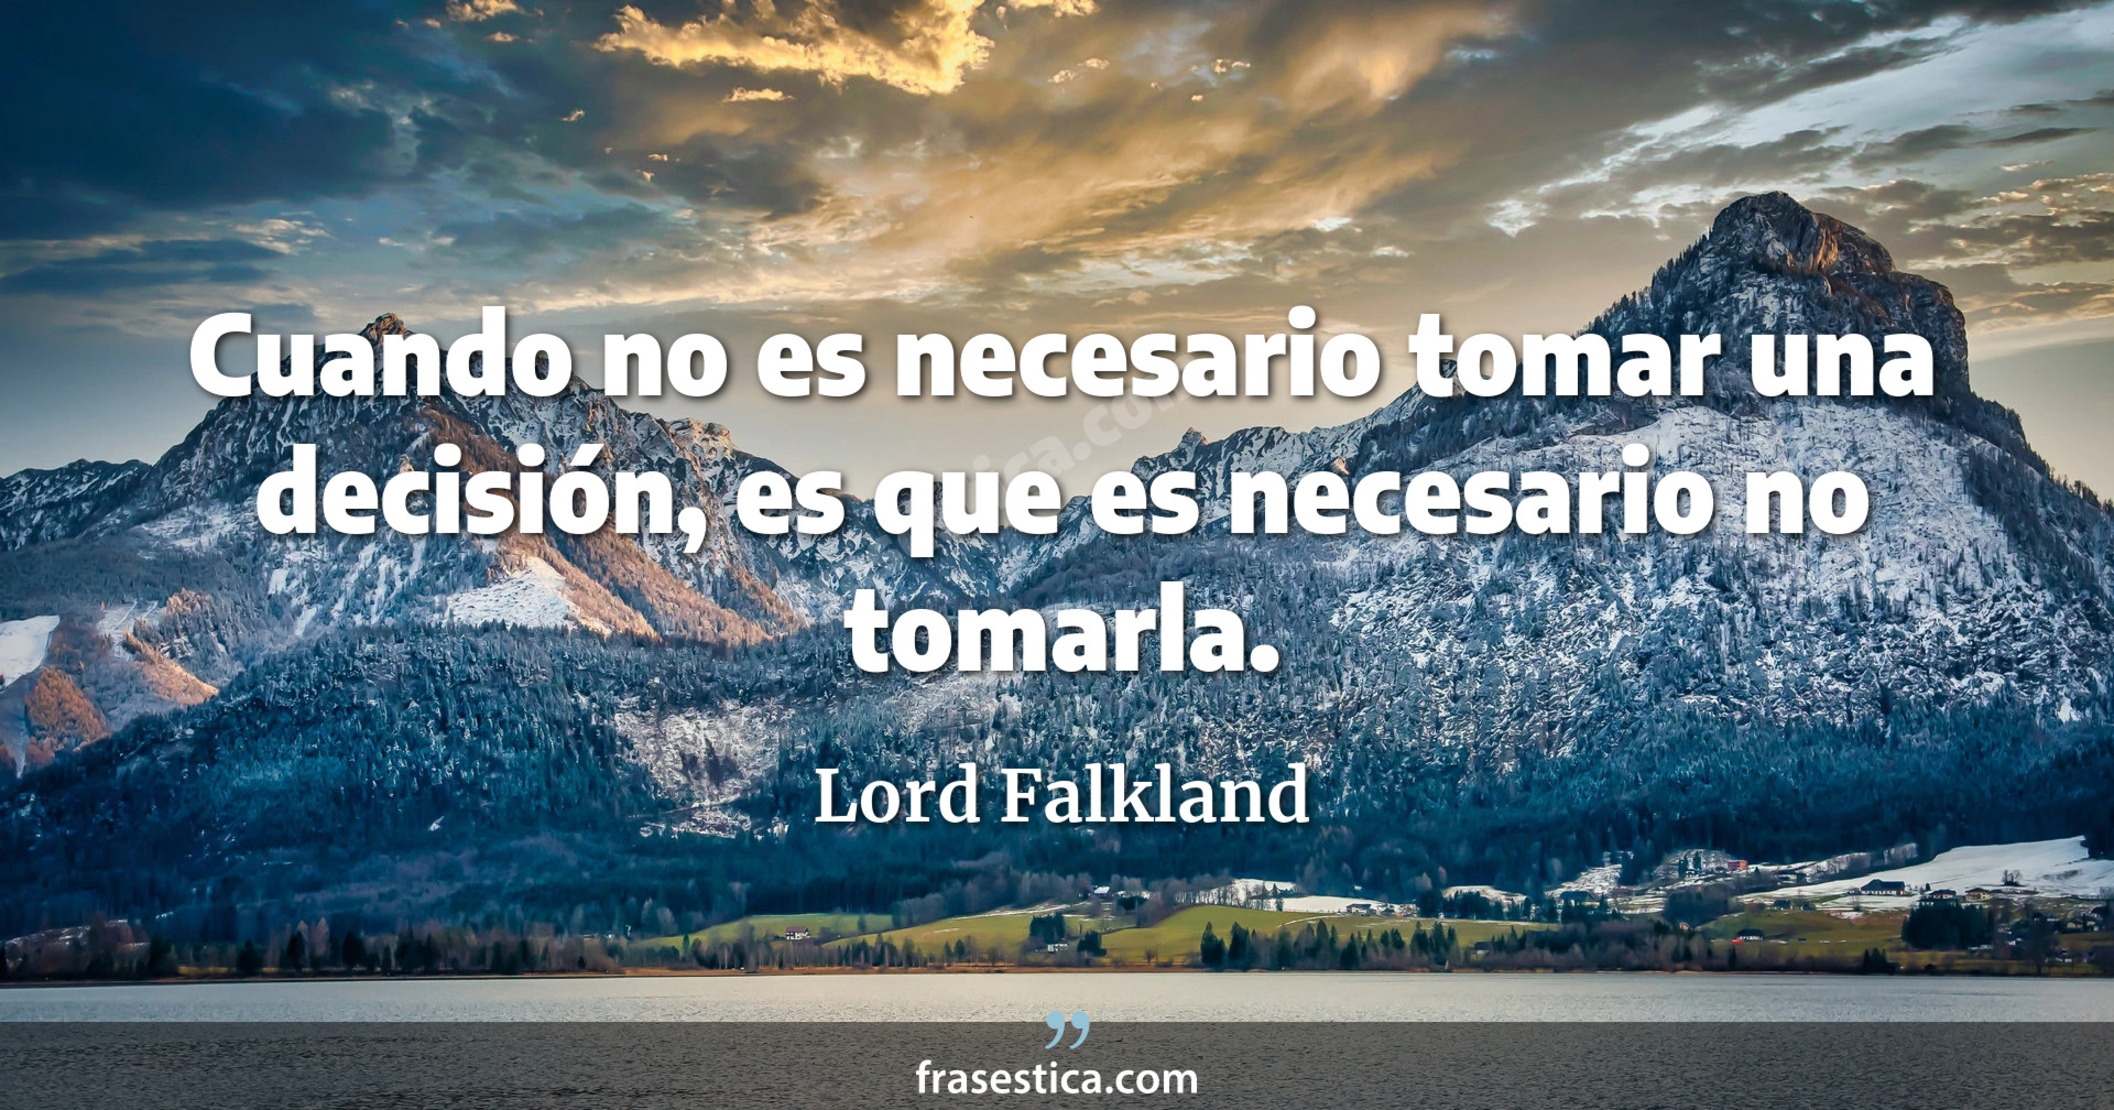 Cuando no es necesario tomar una decisión, es que es necesario no tomarla. - Lord Falkland